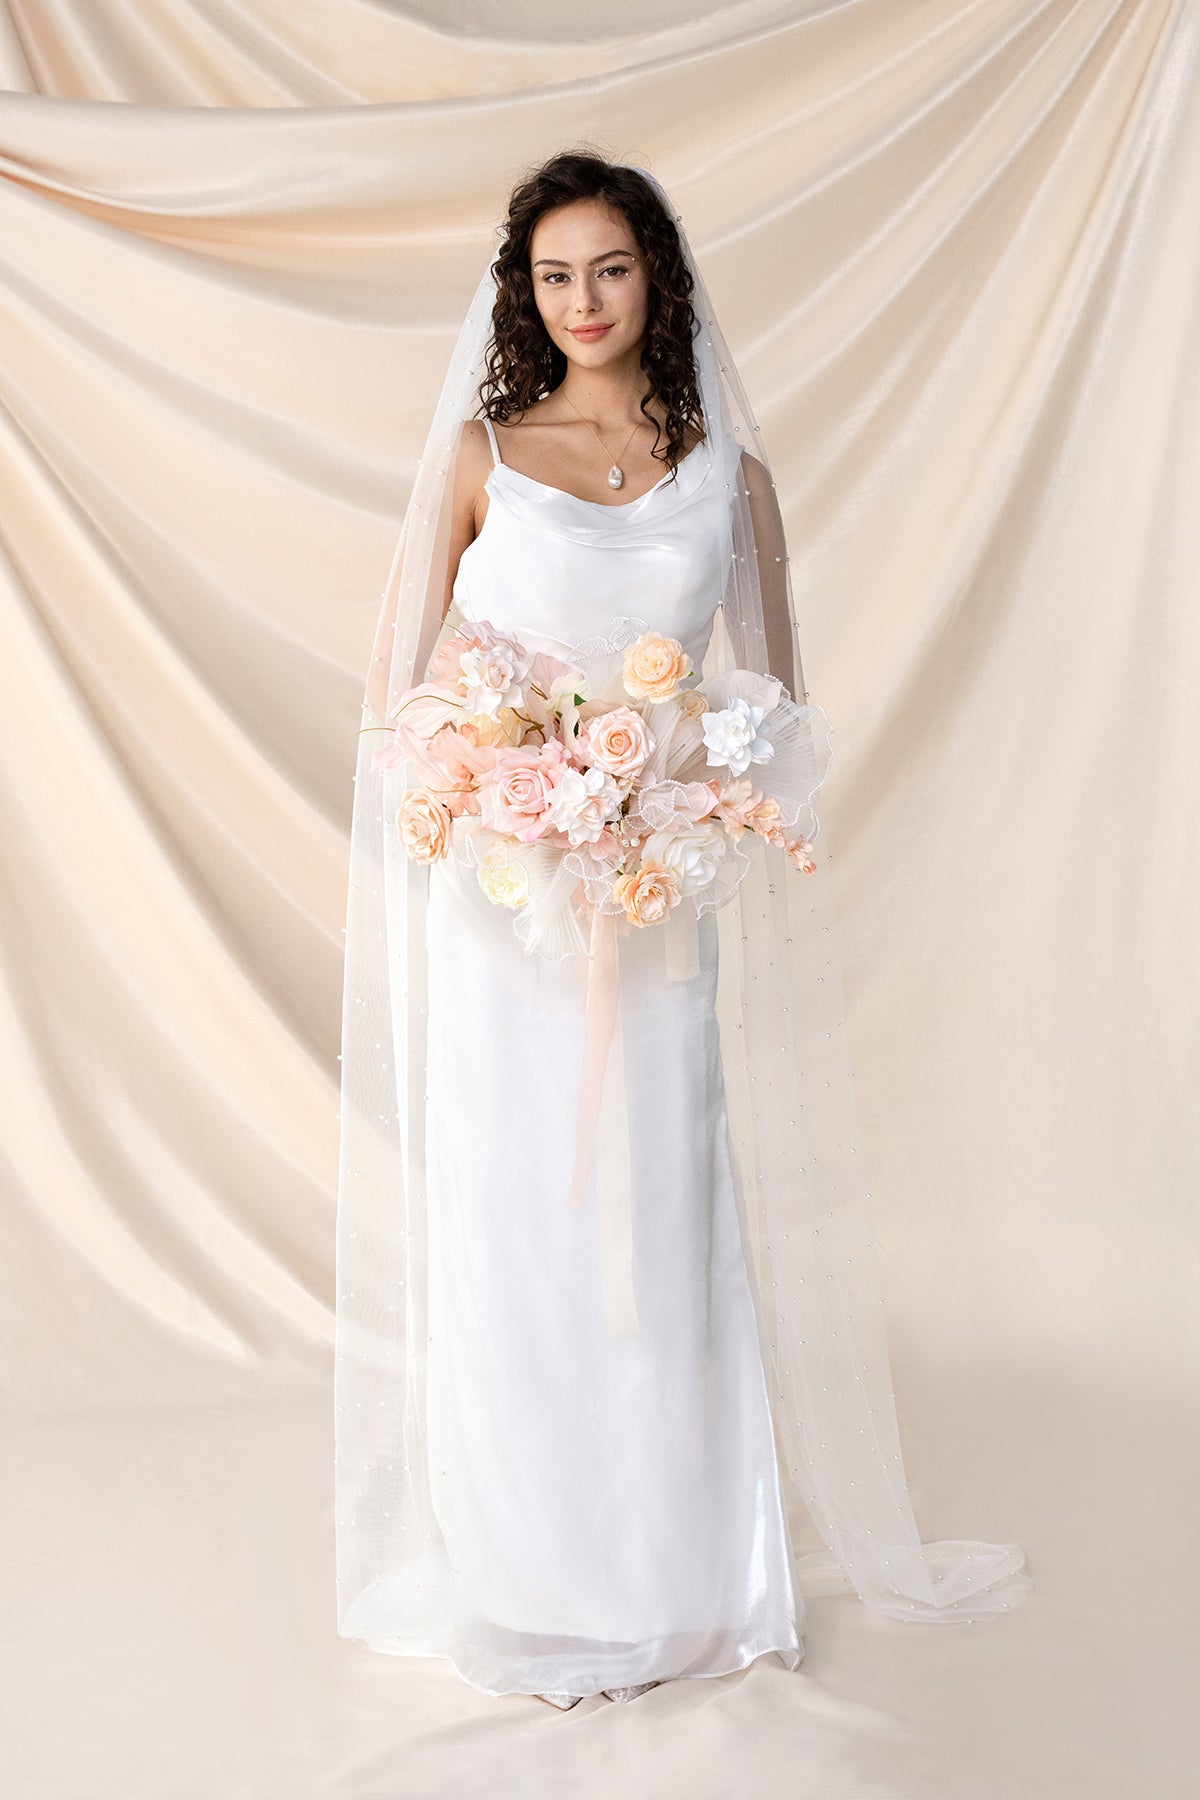 Medium Free-Form Bridal Bouquet in Glowing Blush & Pearl